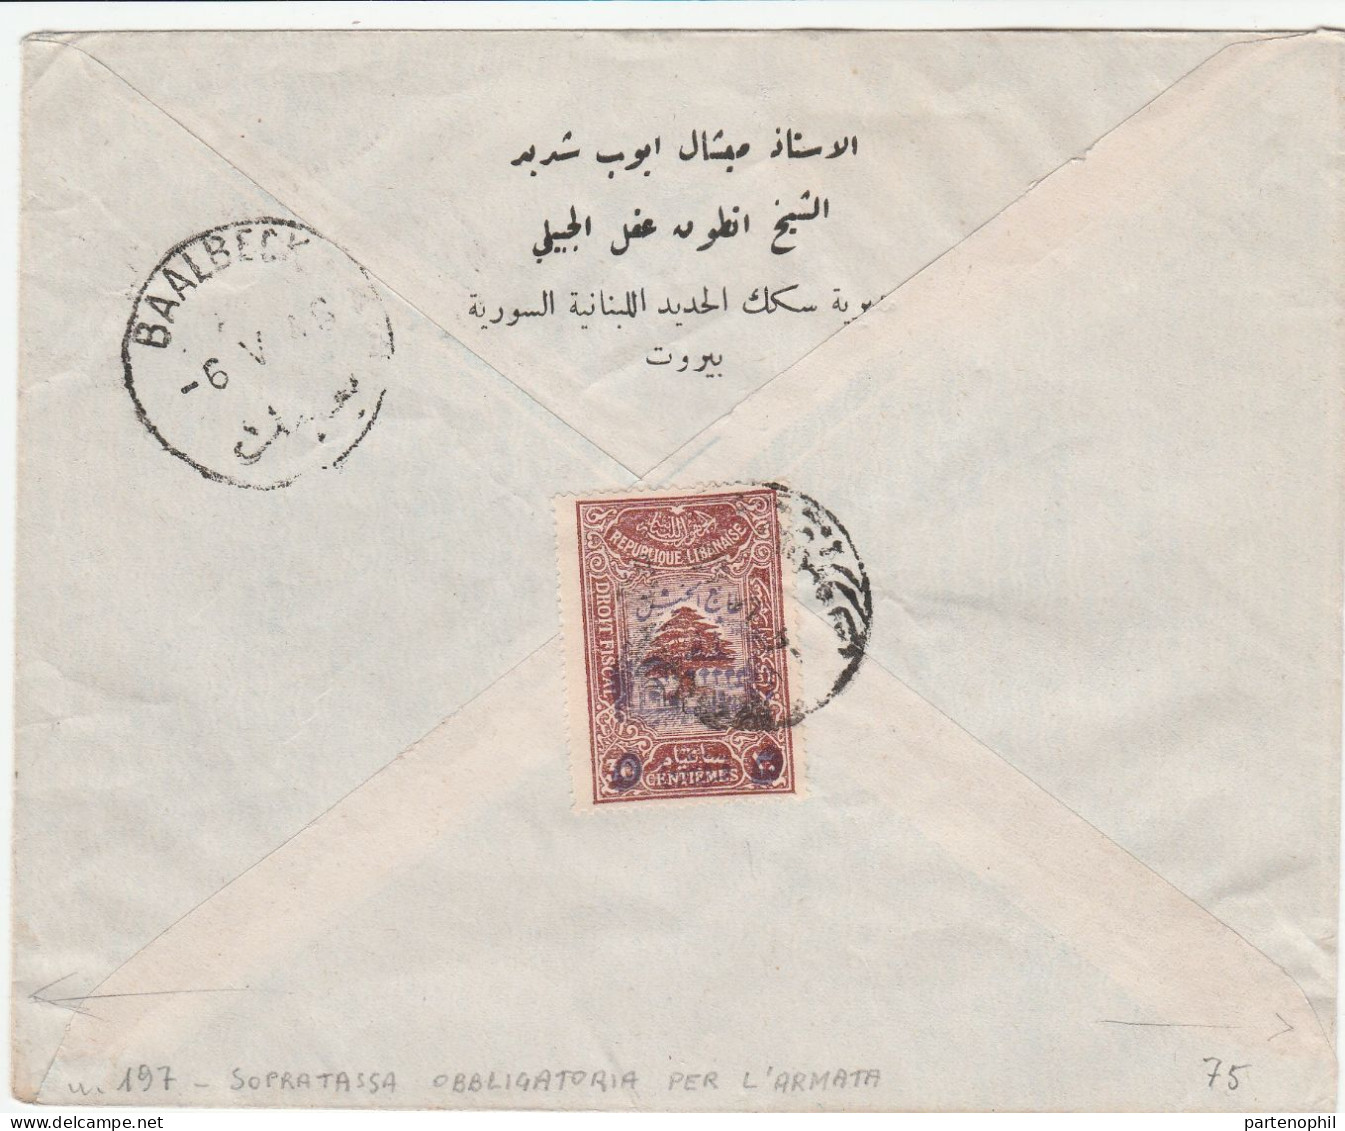 Libanon Republique Libanaise Libano 1946 - Postal History - Postgeschichte - Storia Postale - Histoire Postale - Lebanon